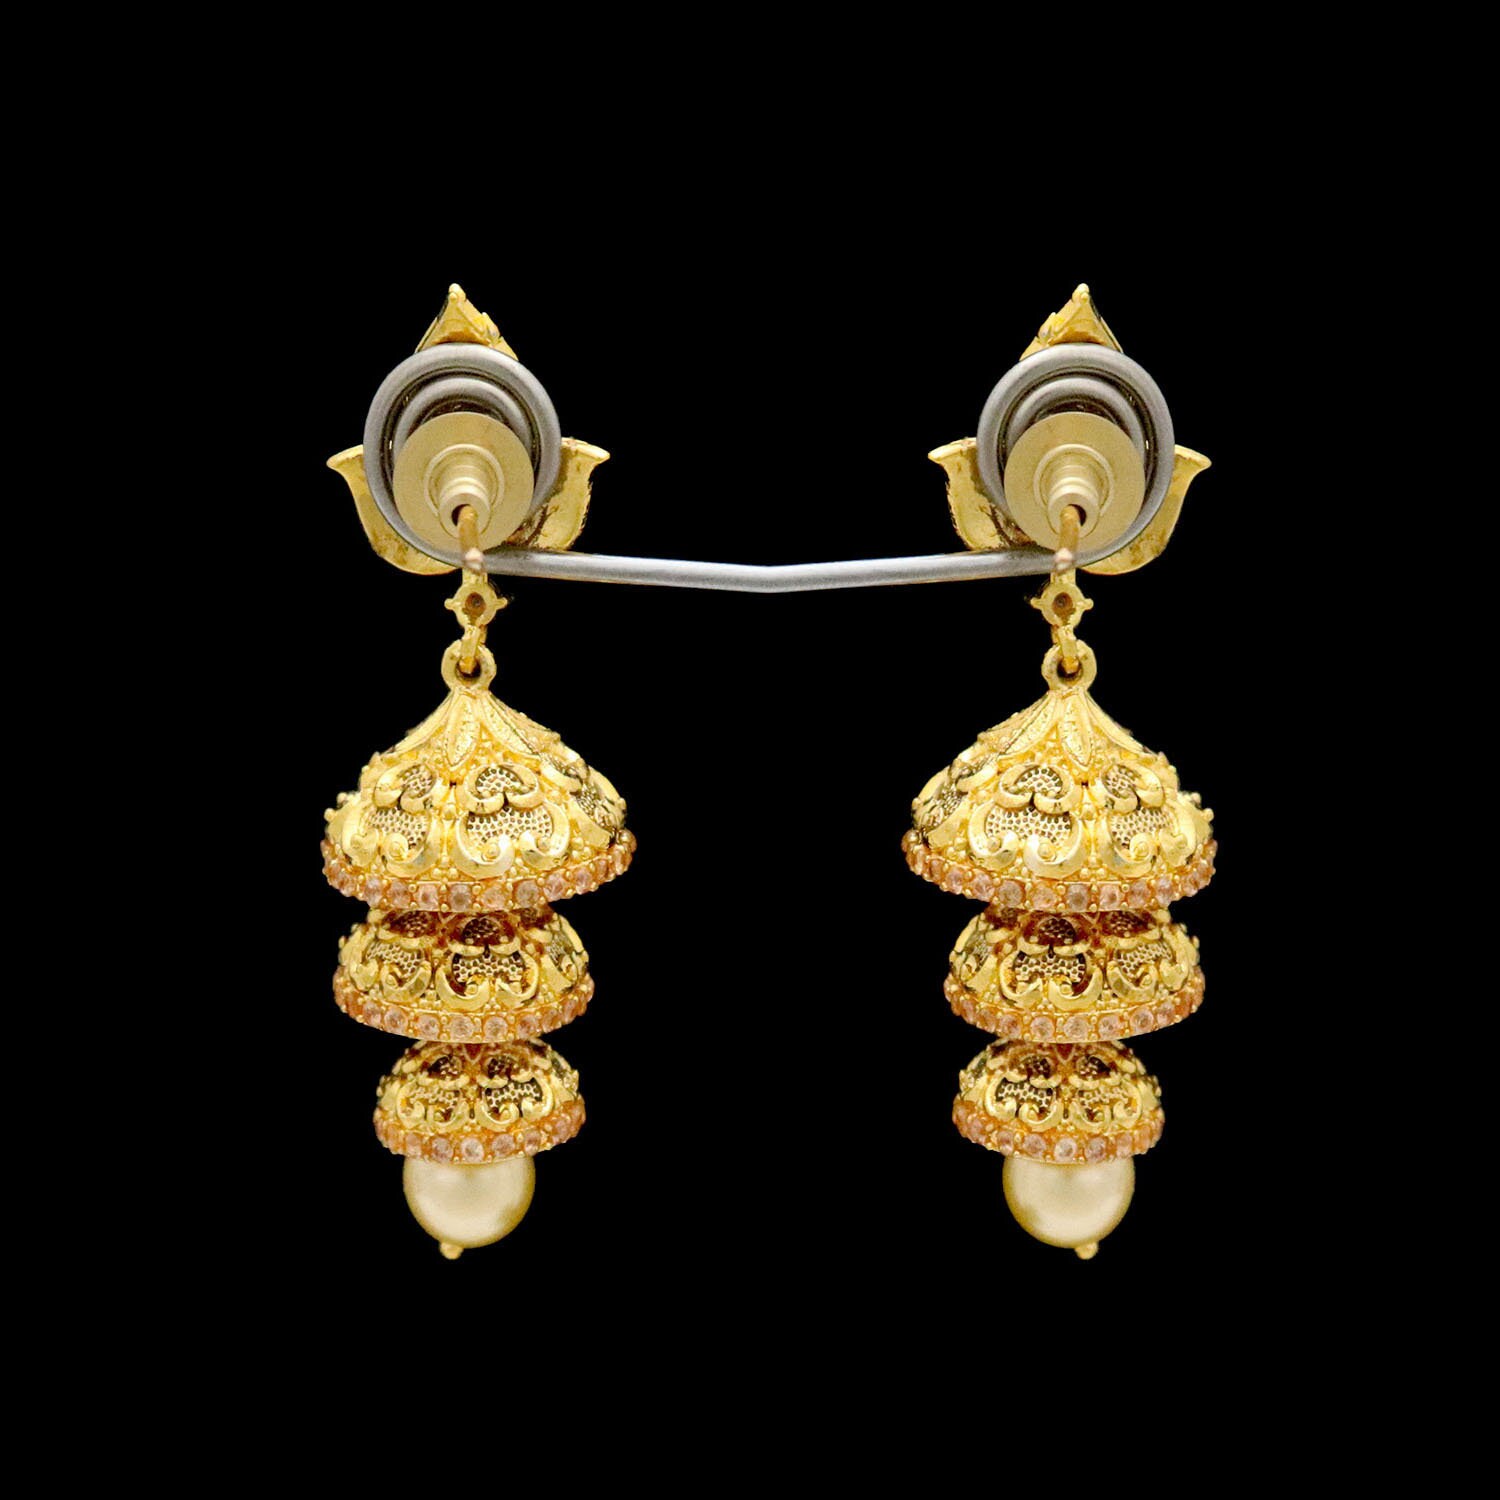 Fancy 3 tier Gold Jhumka Earrings - ER-2378